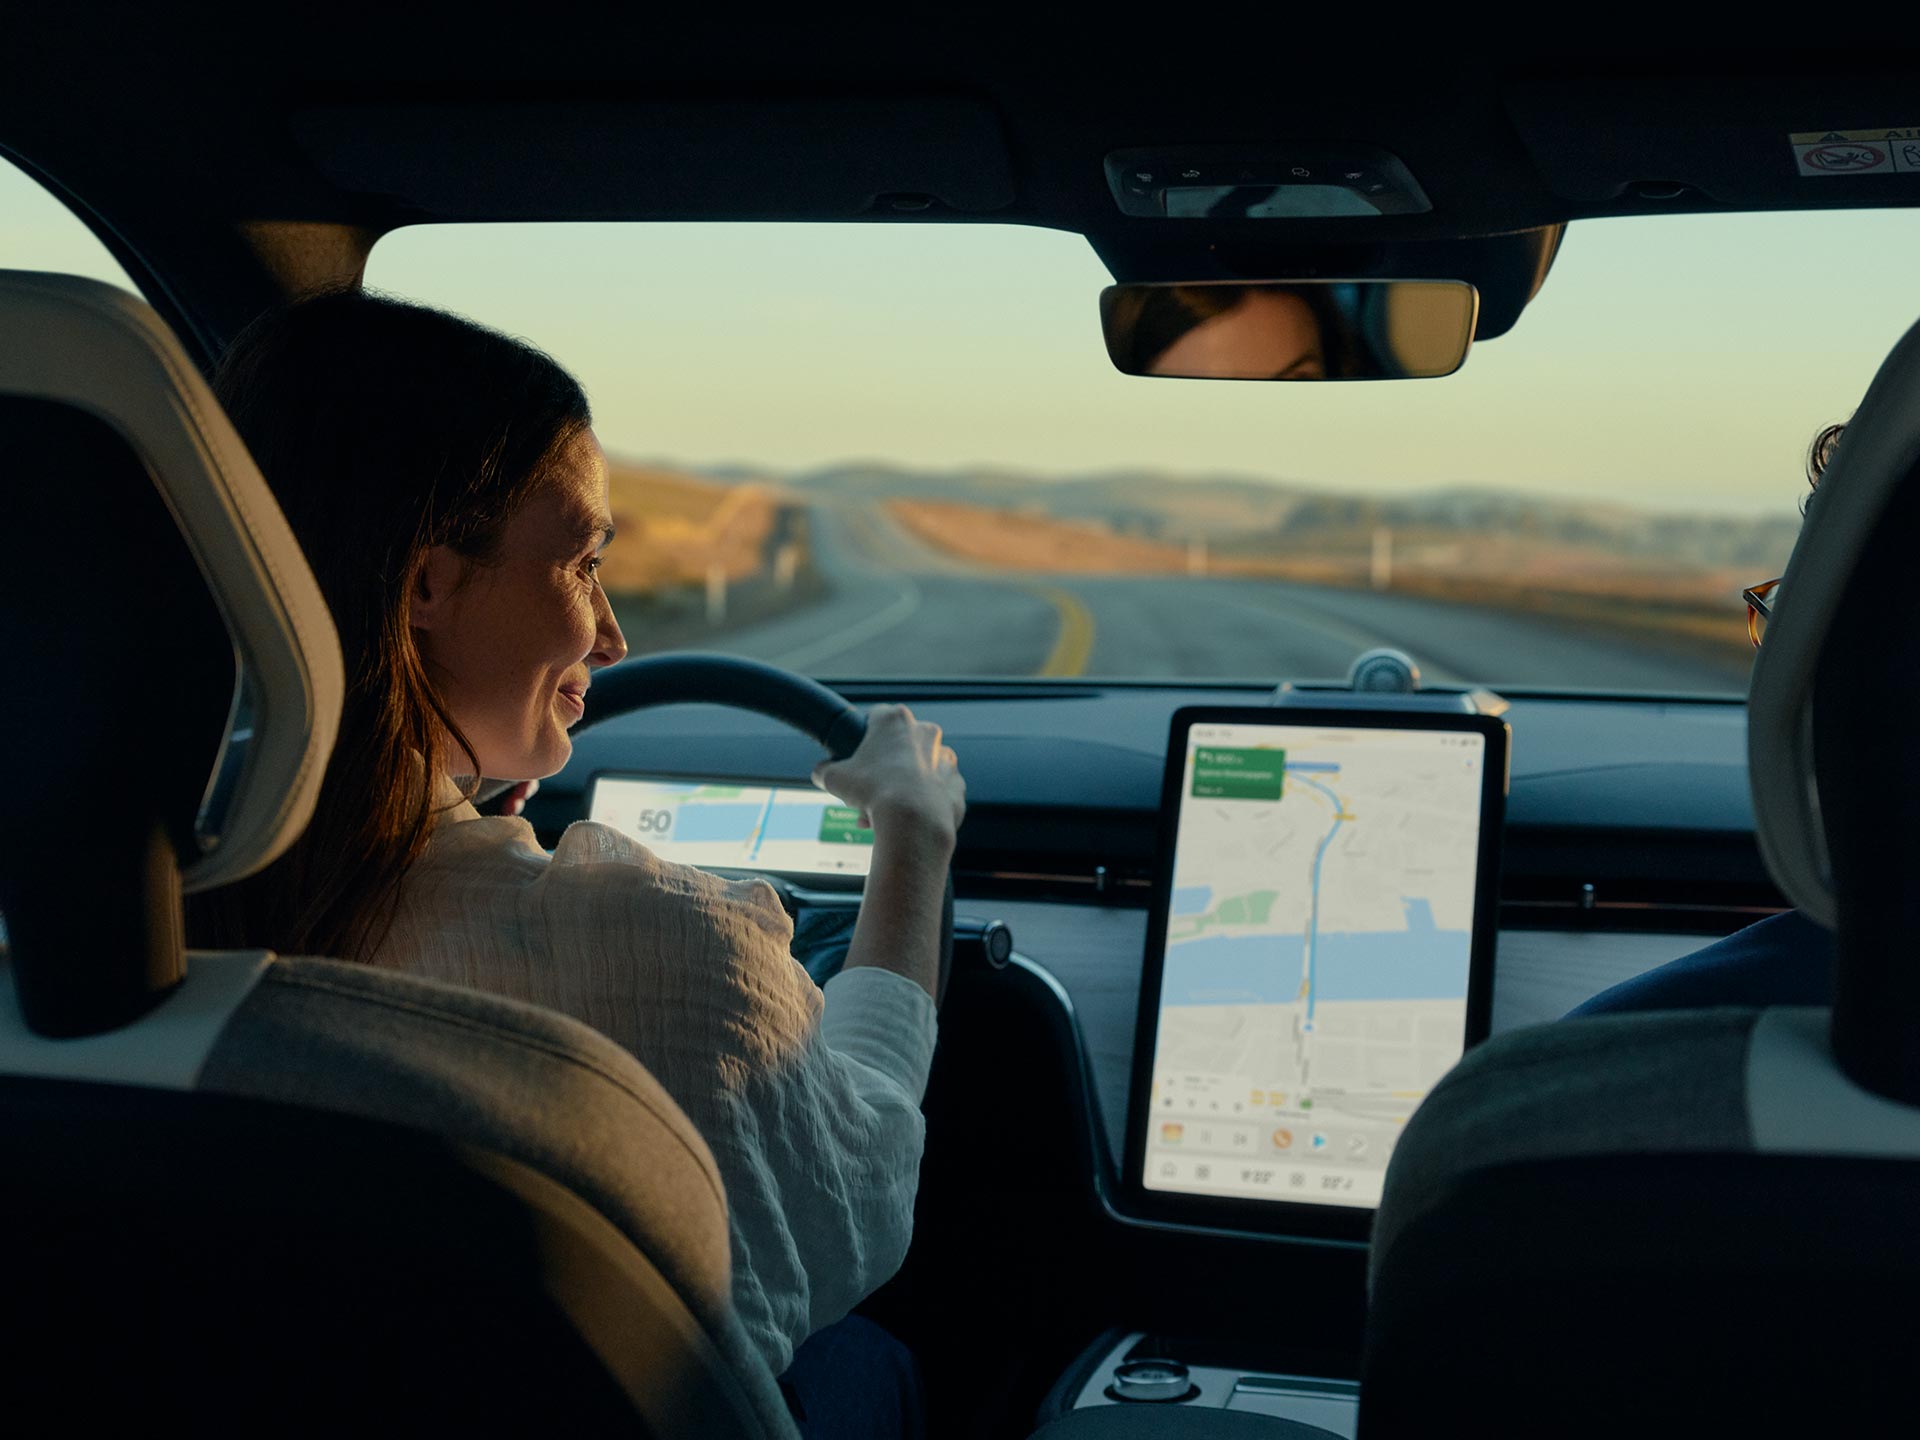 Gledana sa stražnjeg sjedala suvozača, žena se smiješi dok gleda u veliki, svijetli središnji zaslon u svom automobilu Volvo.